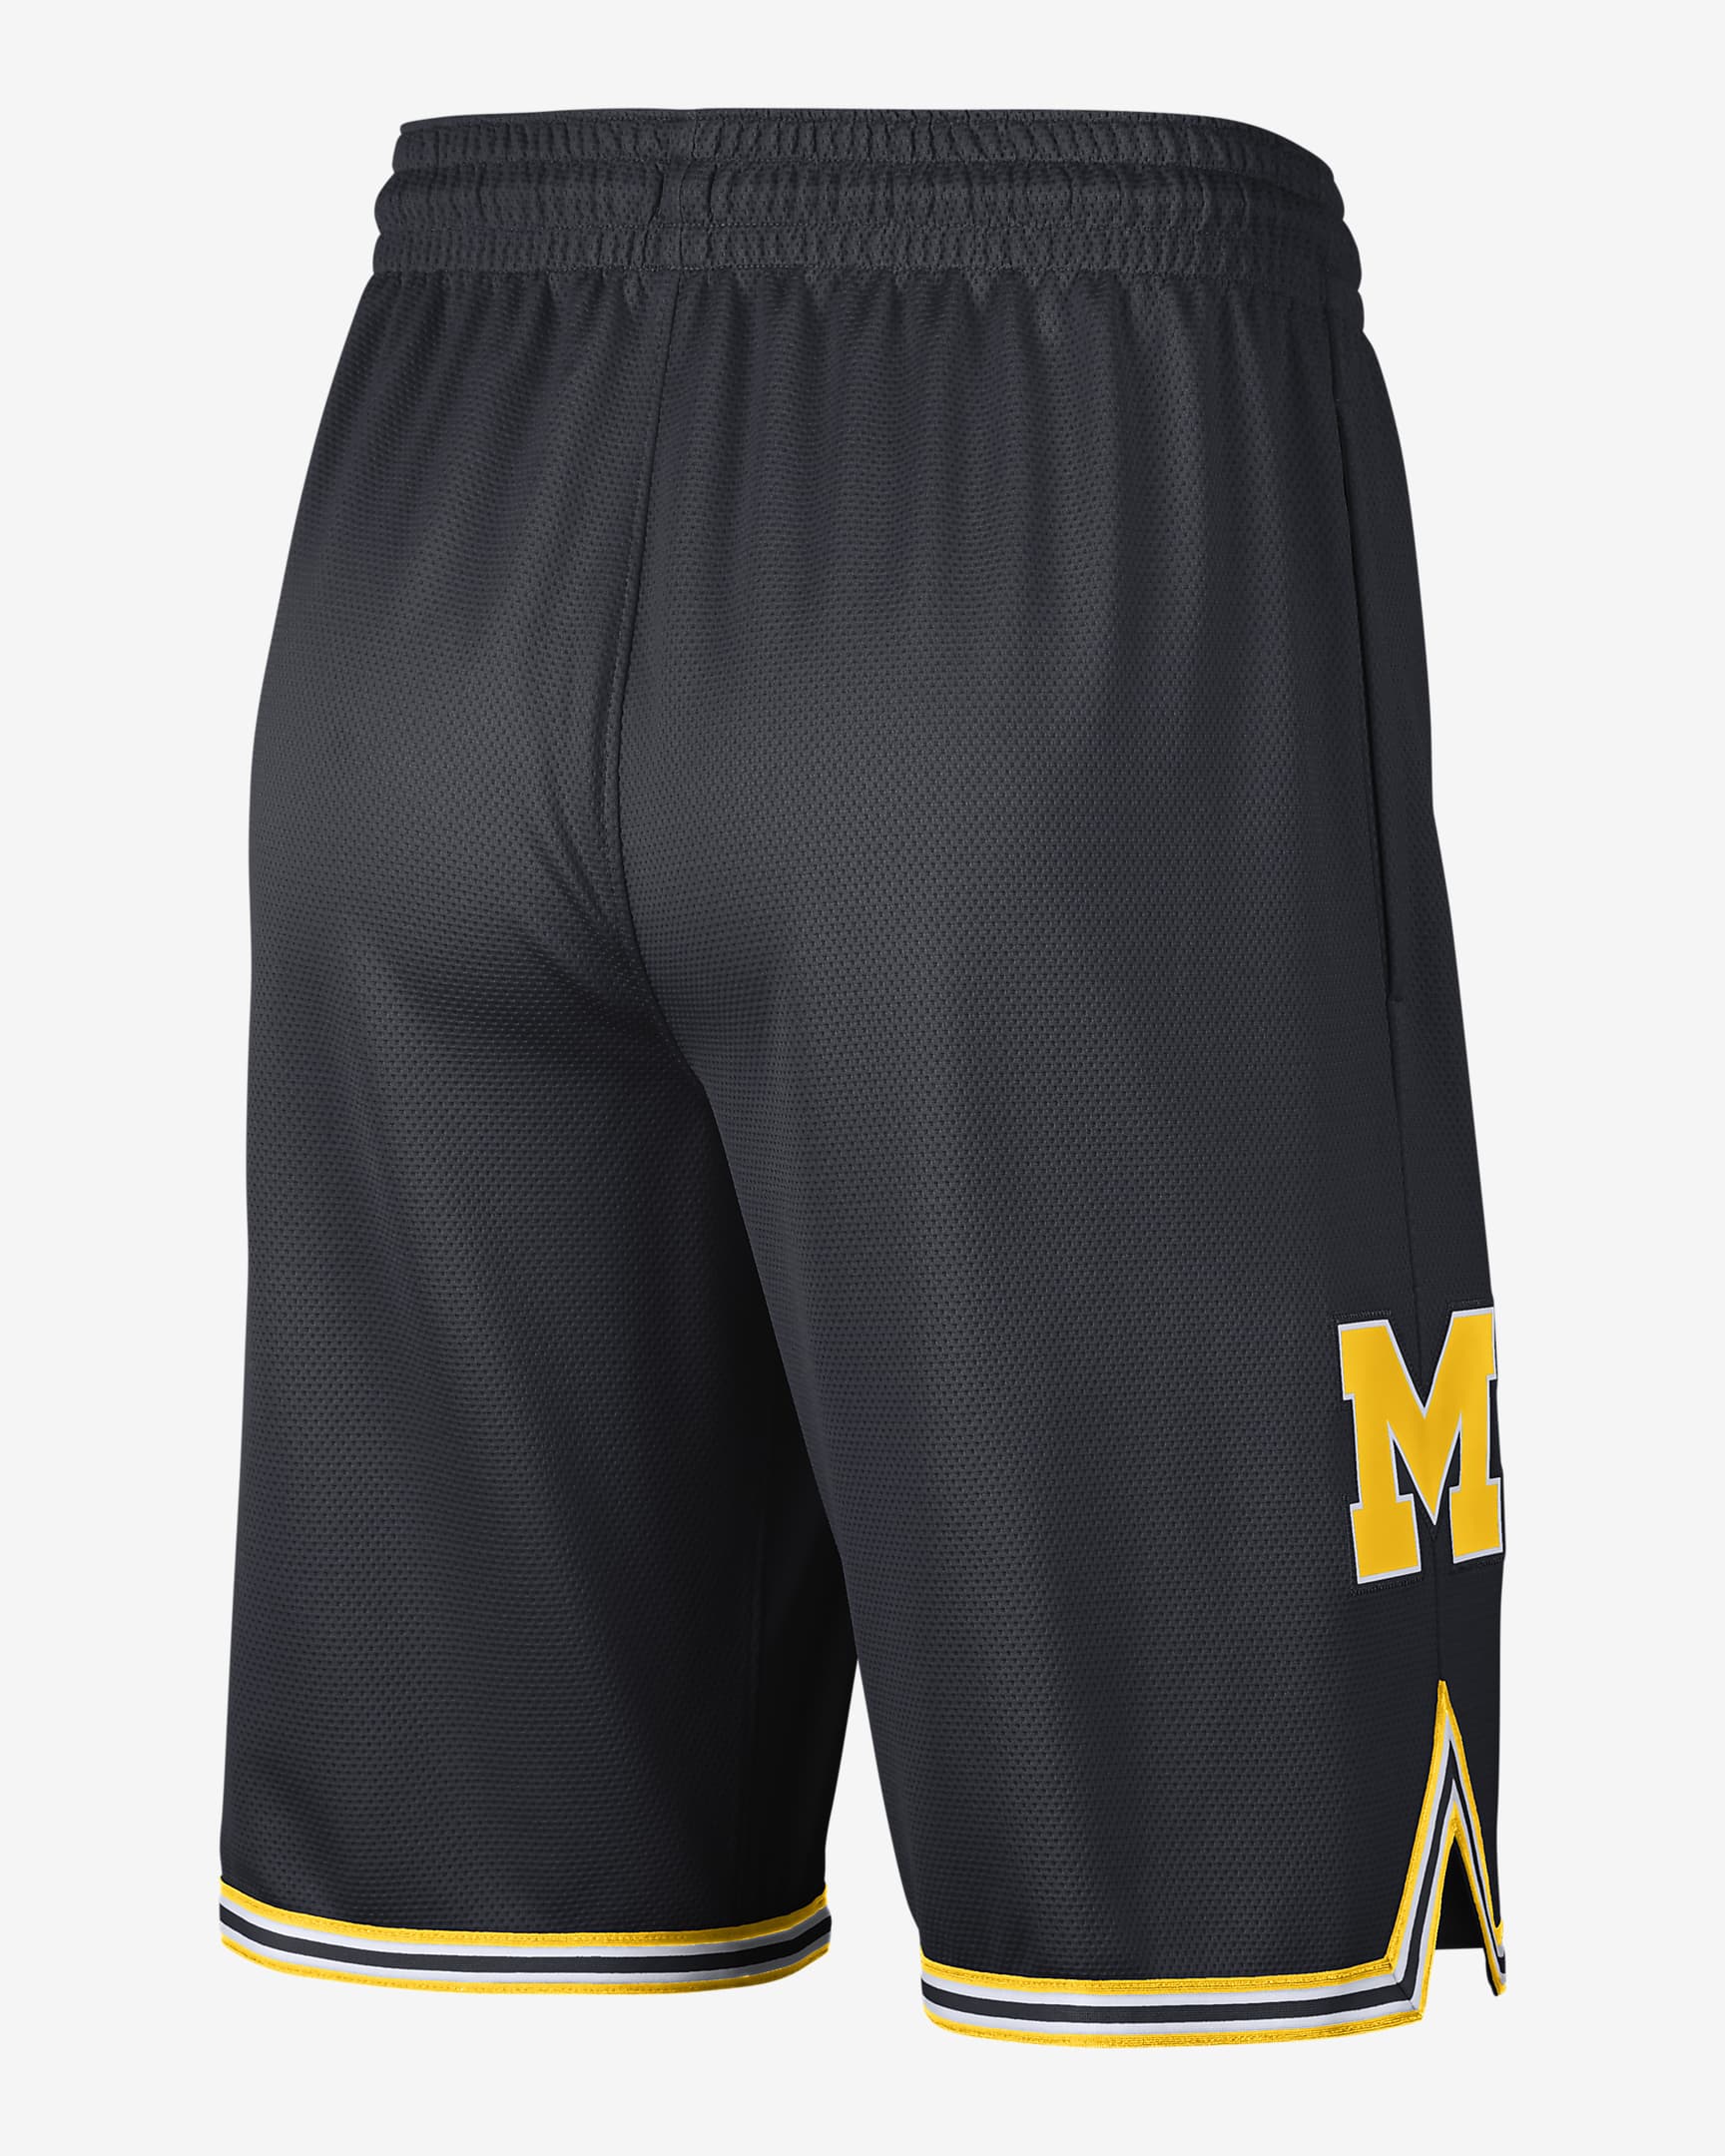 Shorts de básquetbol Replica para hombre Jordan College (Michigan ...